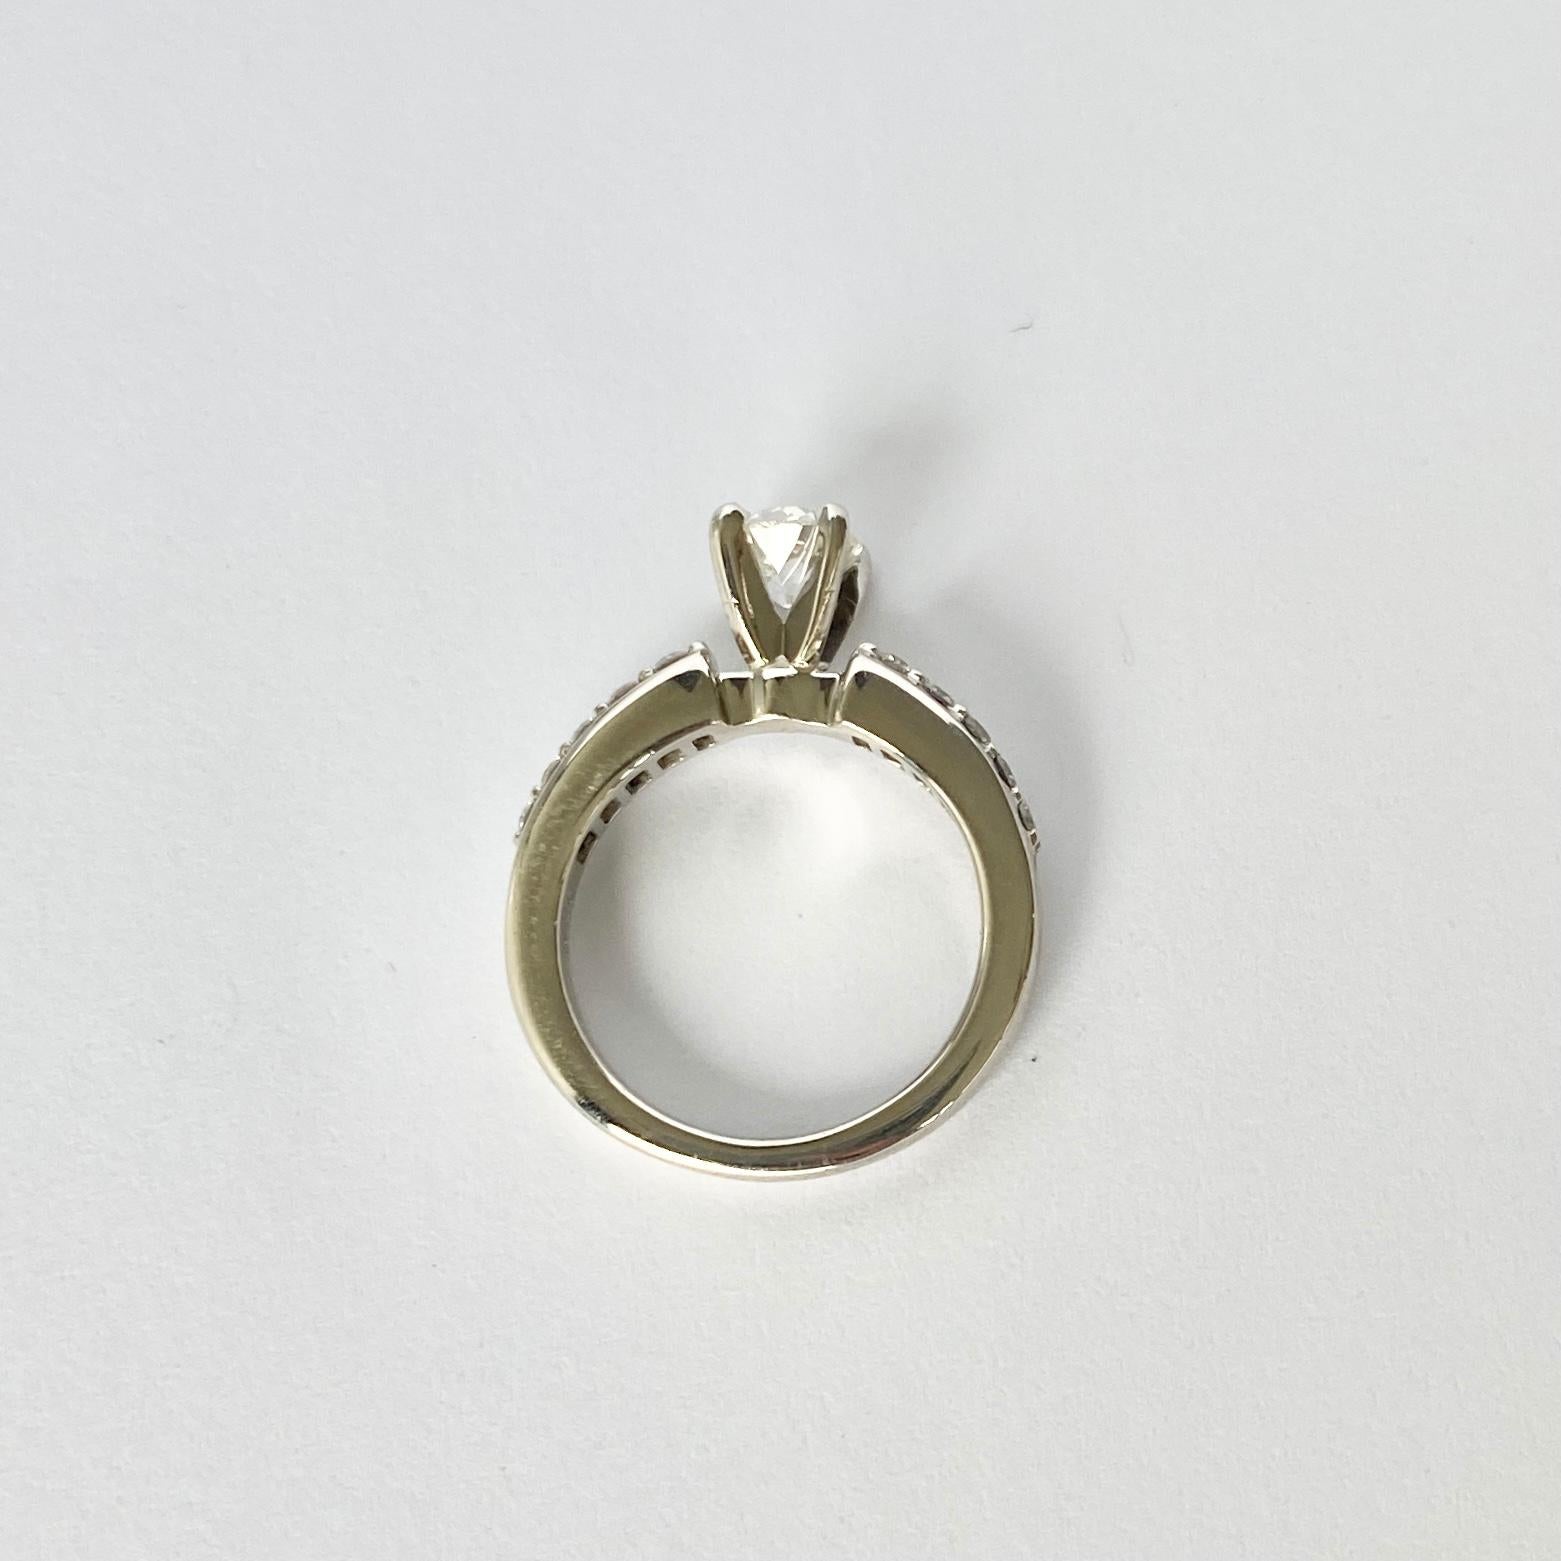 Der Hauptdiamant in diesem Ring misst 60 pt und hat die Farbe H/I. Der Stein glänzt wunderschön, und auf den Schultern sitzen auf jeder Seite fünf abgestufte Diamanten. Der Ring ist aus Platin modelliert. 

Ringgröße: H oder 3 3/4
Höhe ohne Finger: